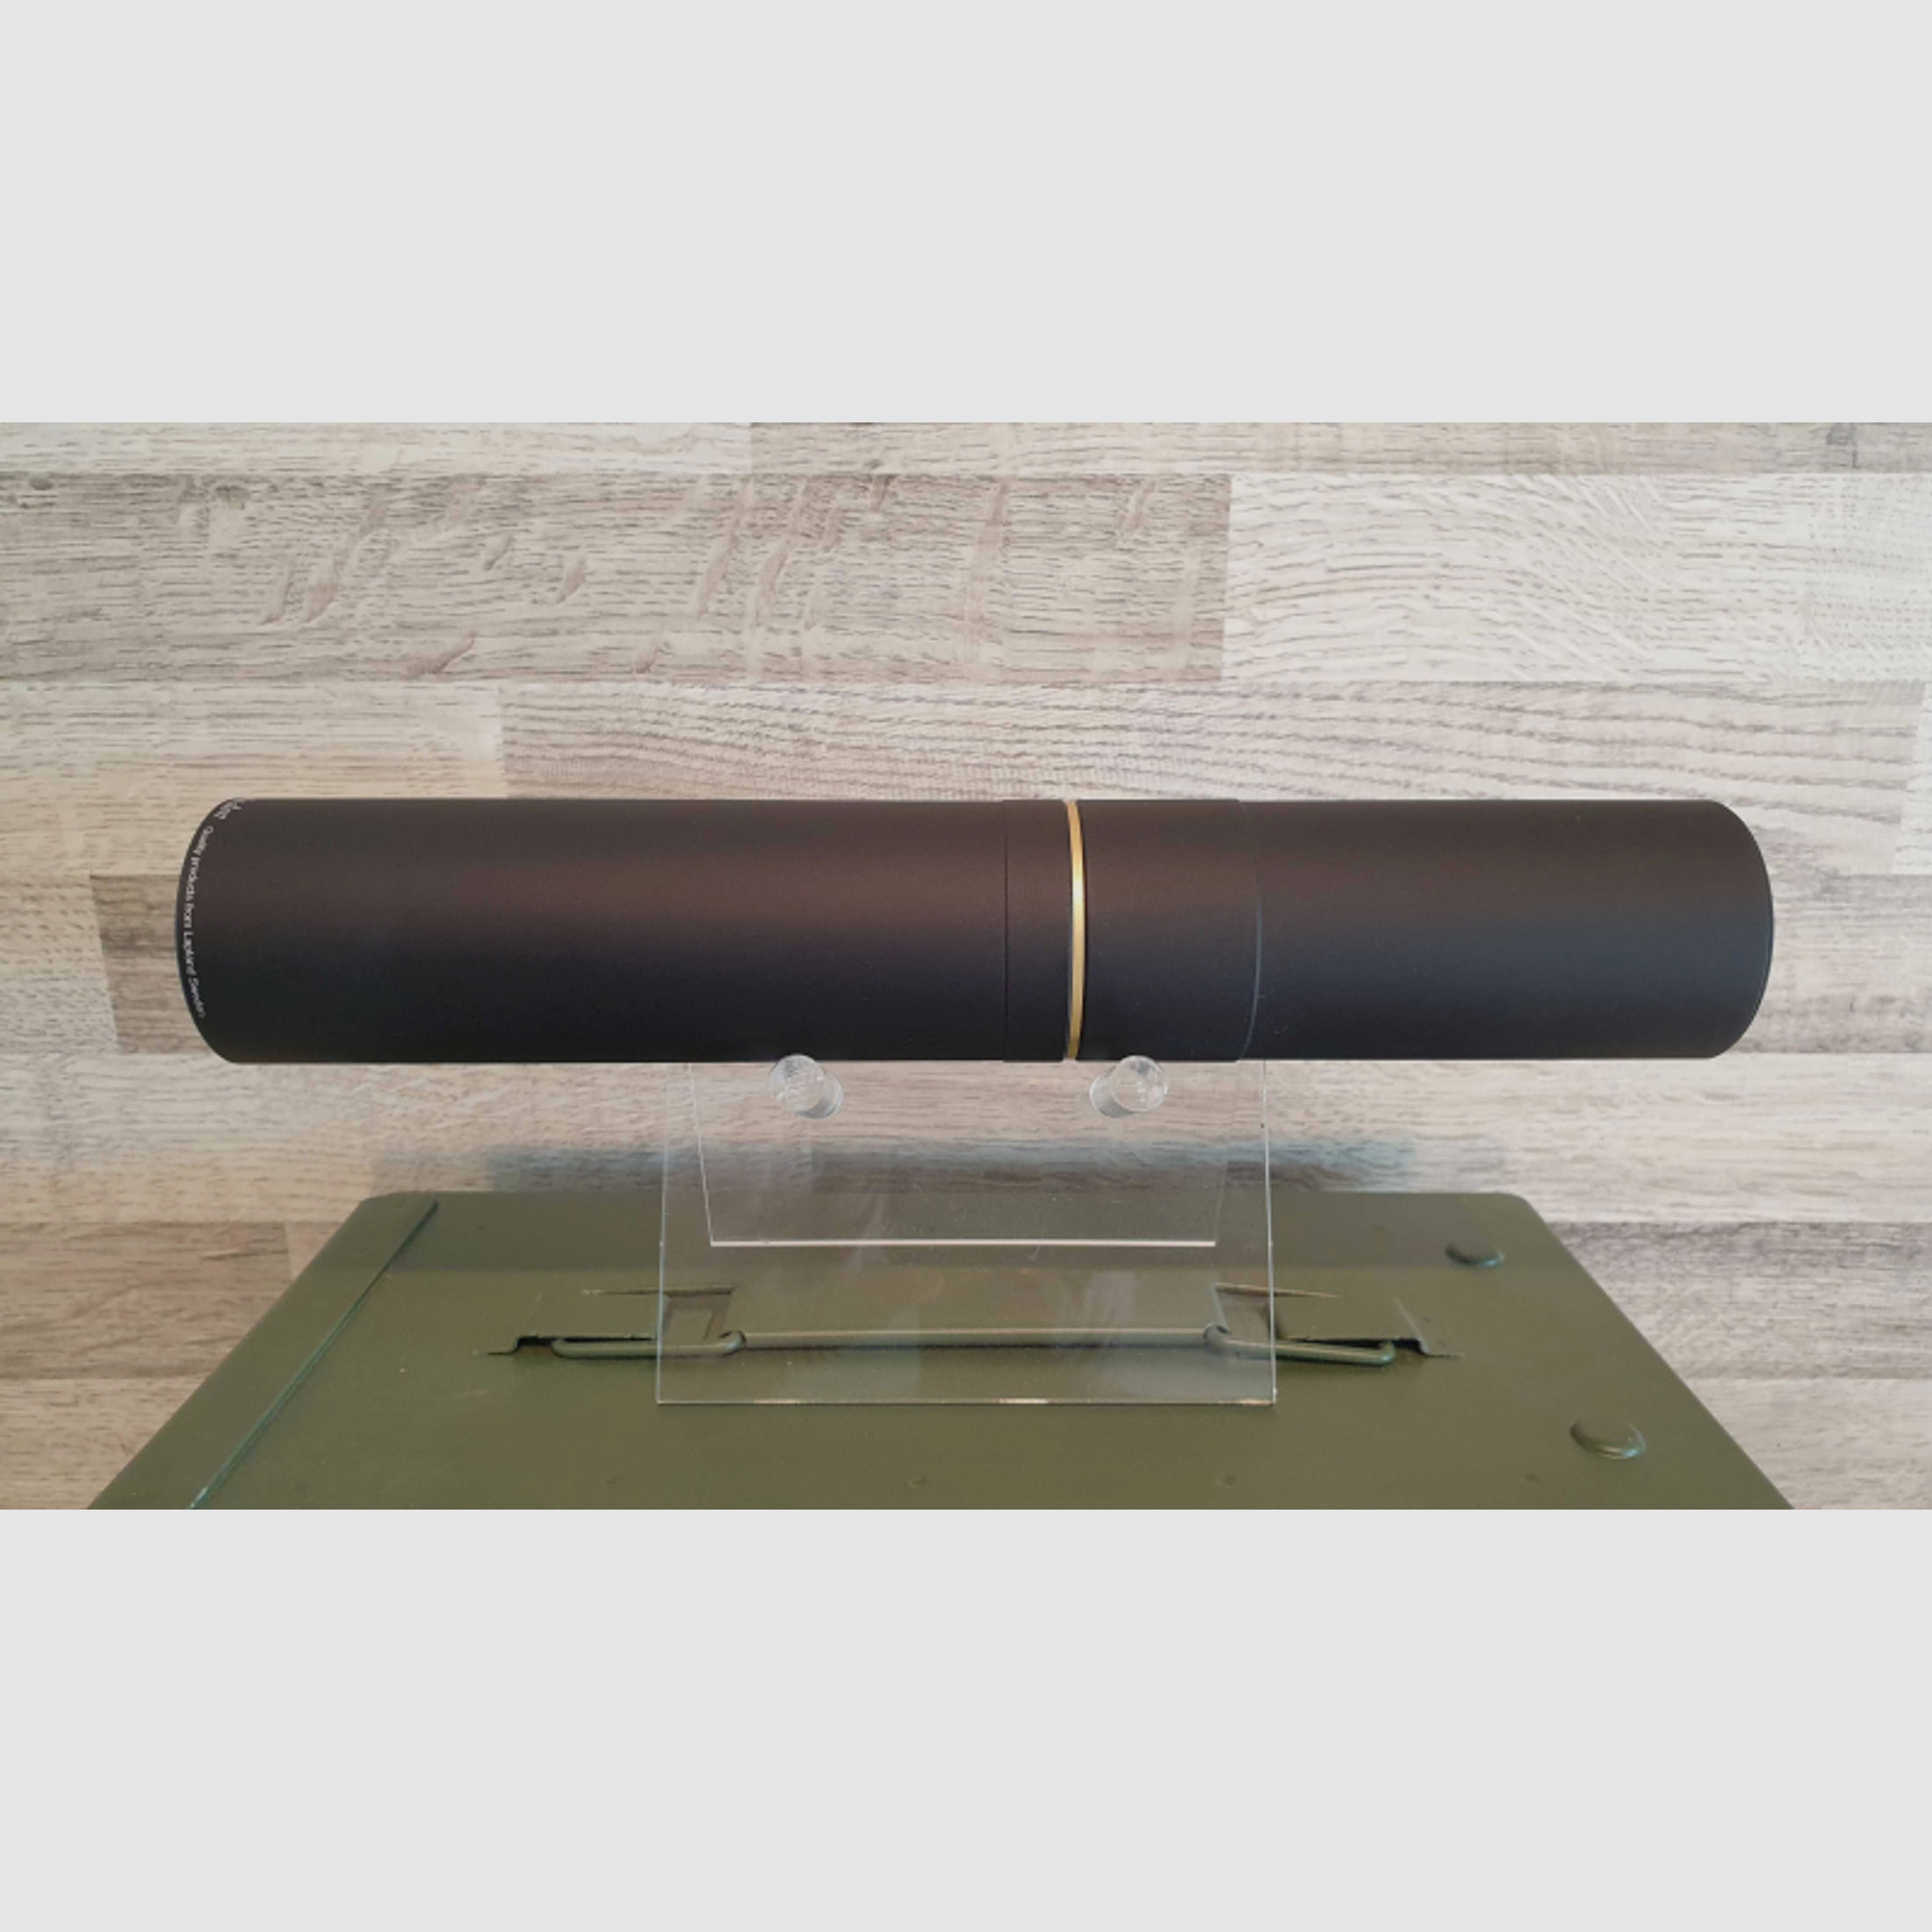 Neuware vom Fachhandel - Over-Barrell Schalldämpfer Stalon WM110 Kal. 6,5 - 7,62mm Gewinde 1/2"x20